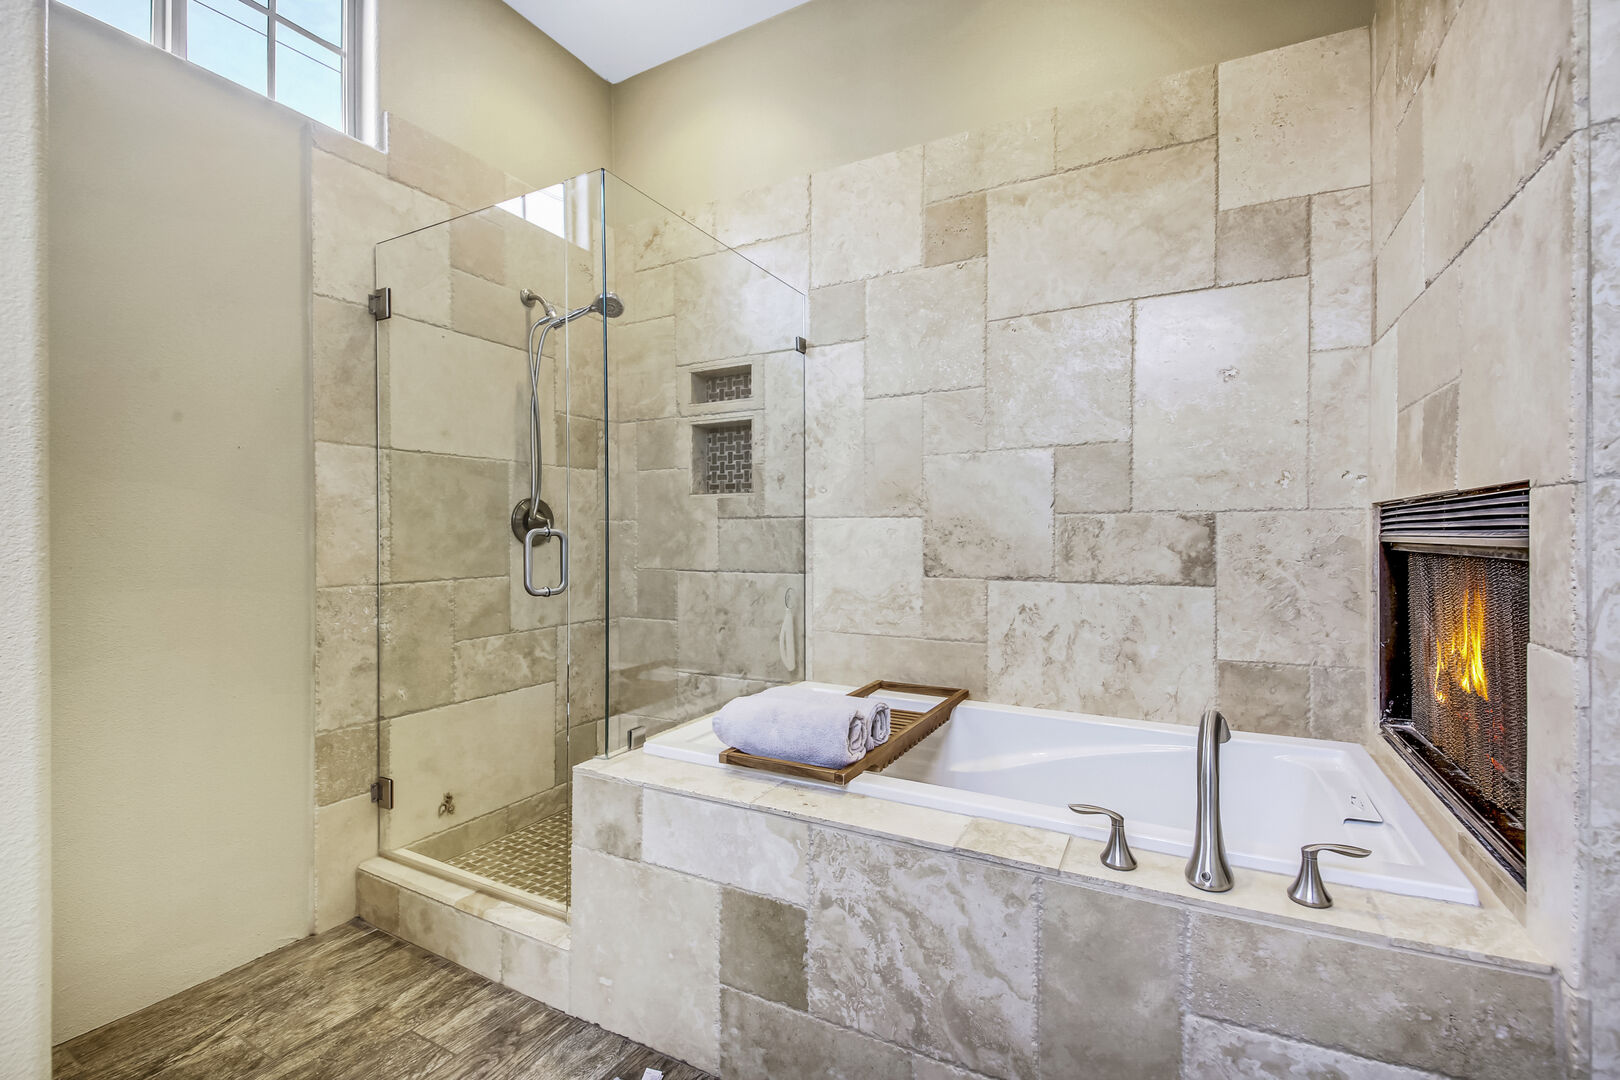 The private, en suite bathroom features a jacuzzi tub, tile shower.